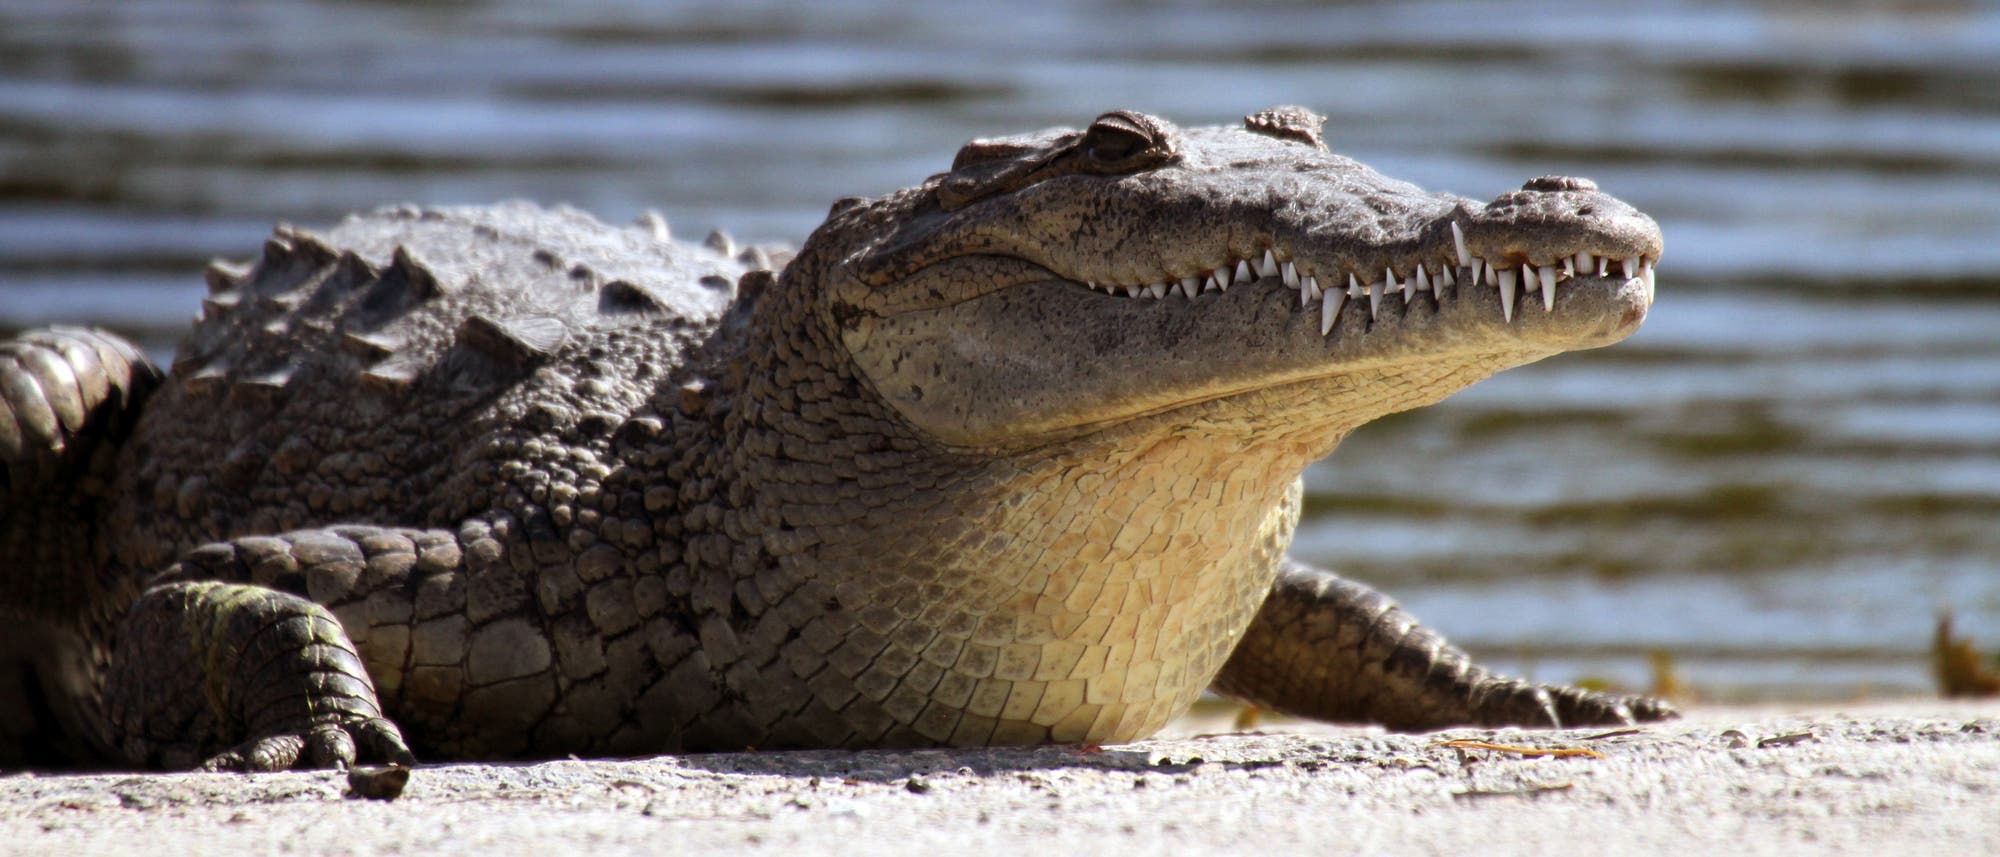 Amerikanisches Krokodil, das sich an Land sonnt.